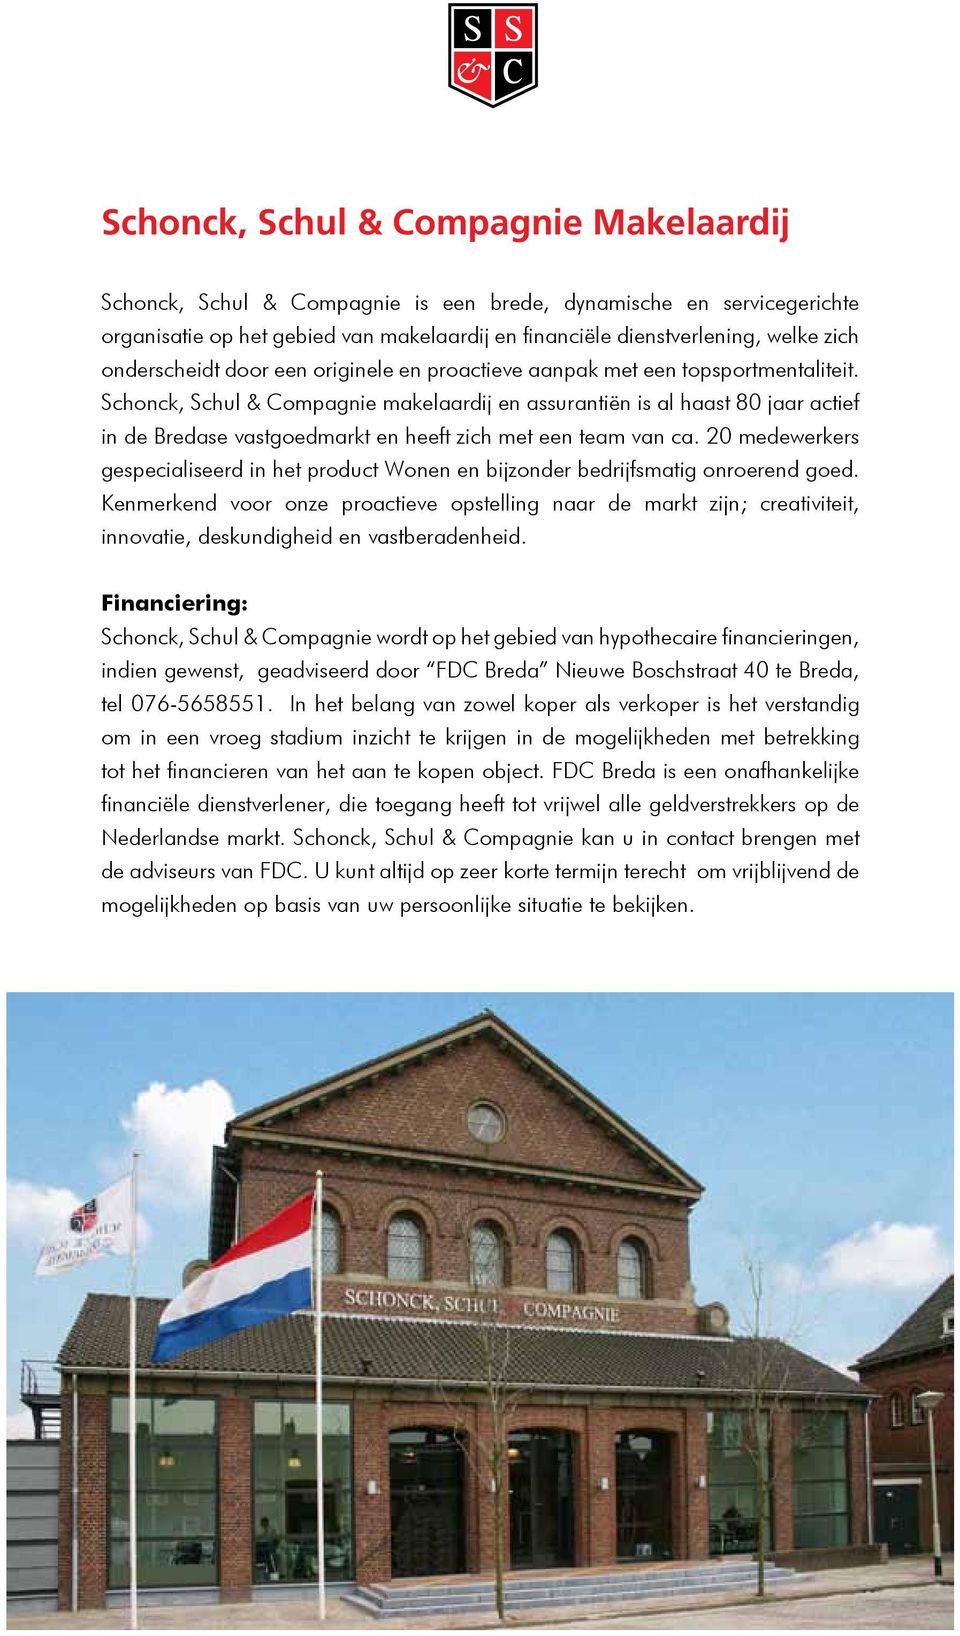 Schonck, Schul & Compagnie makelaardij en assurantiën is al haast 80 jaar actief in de Bredase vastgoedmarkt en heeft zich met een team van ca.